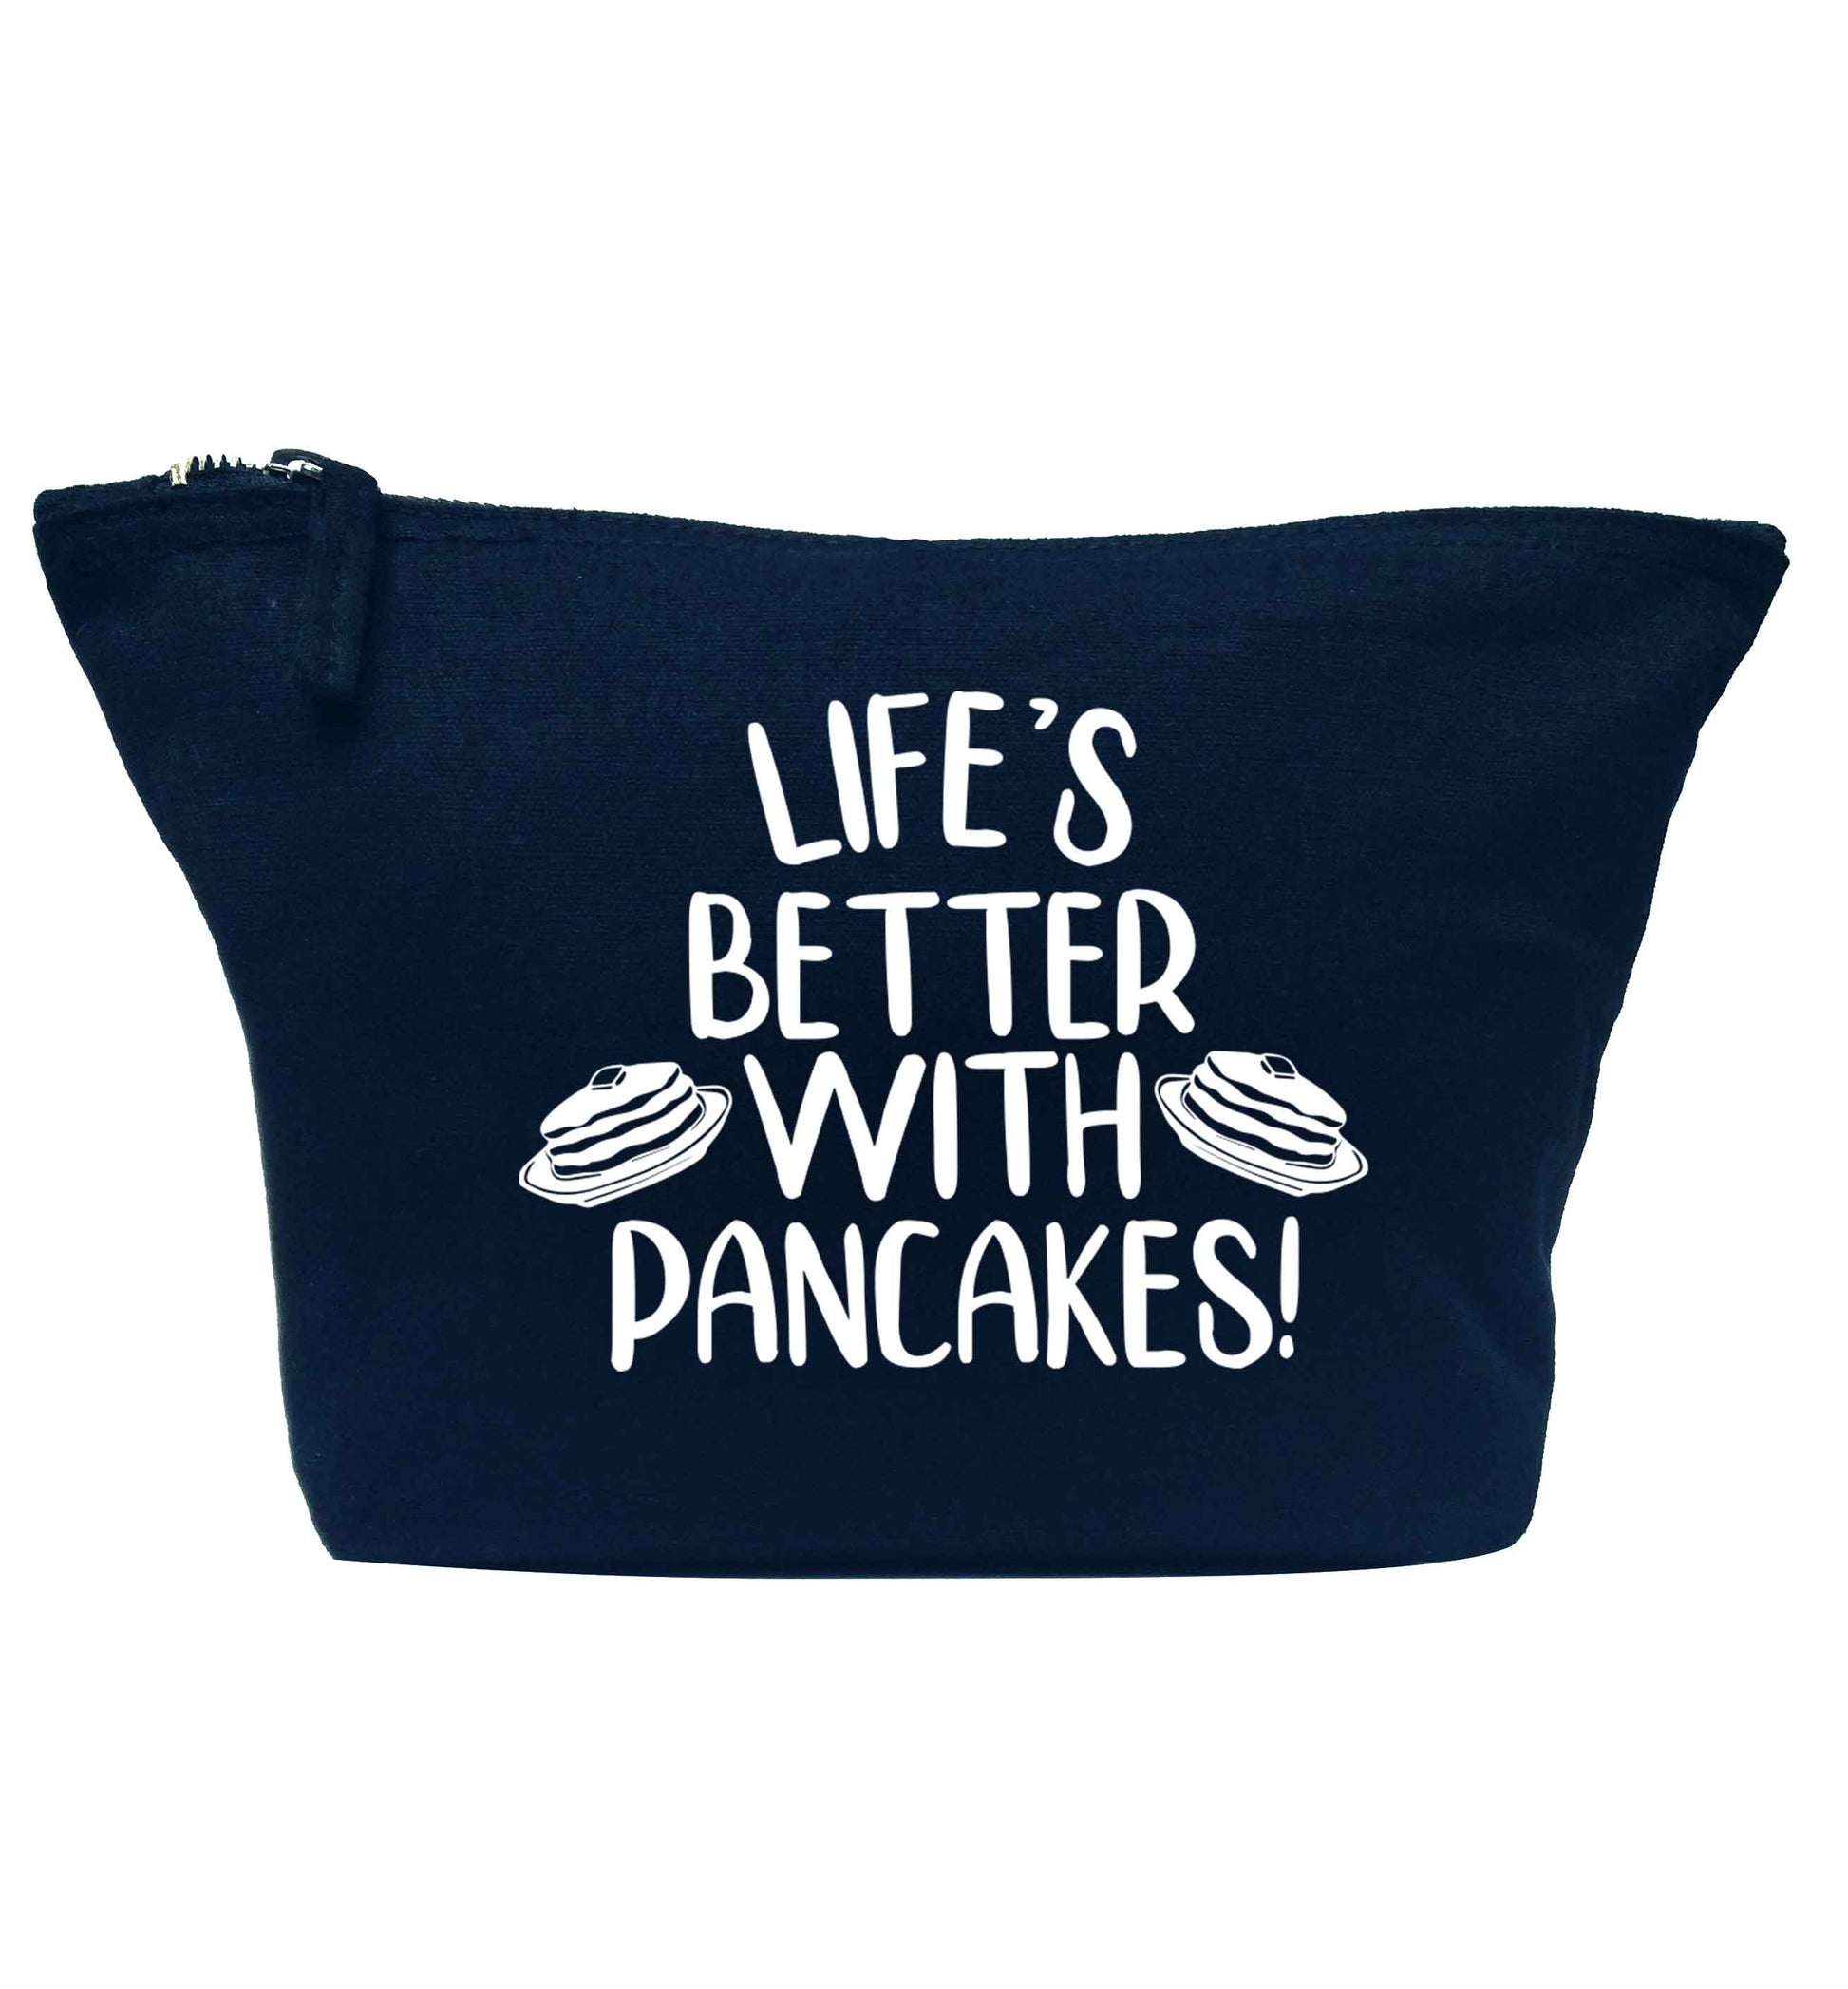 Life's better with pancakes navy makeup bag